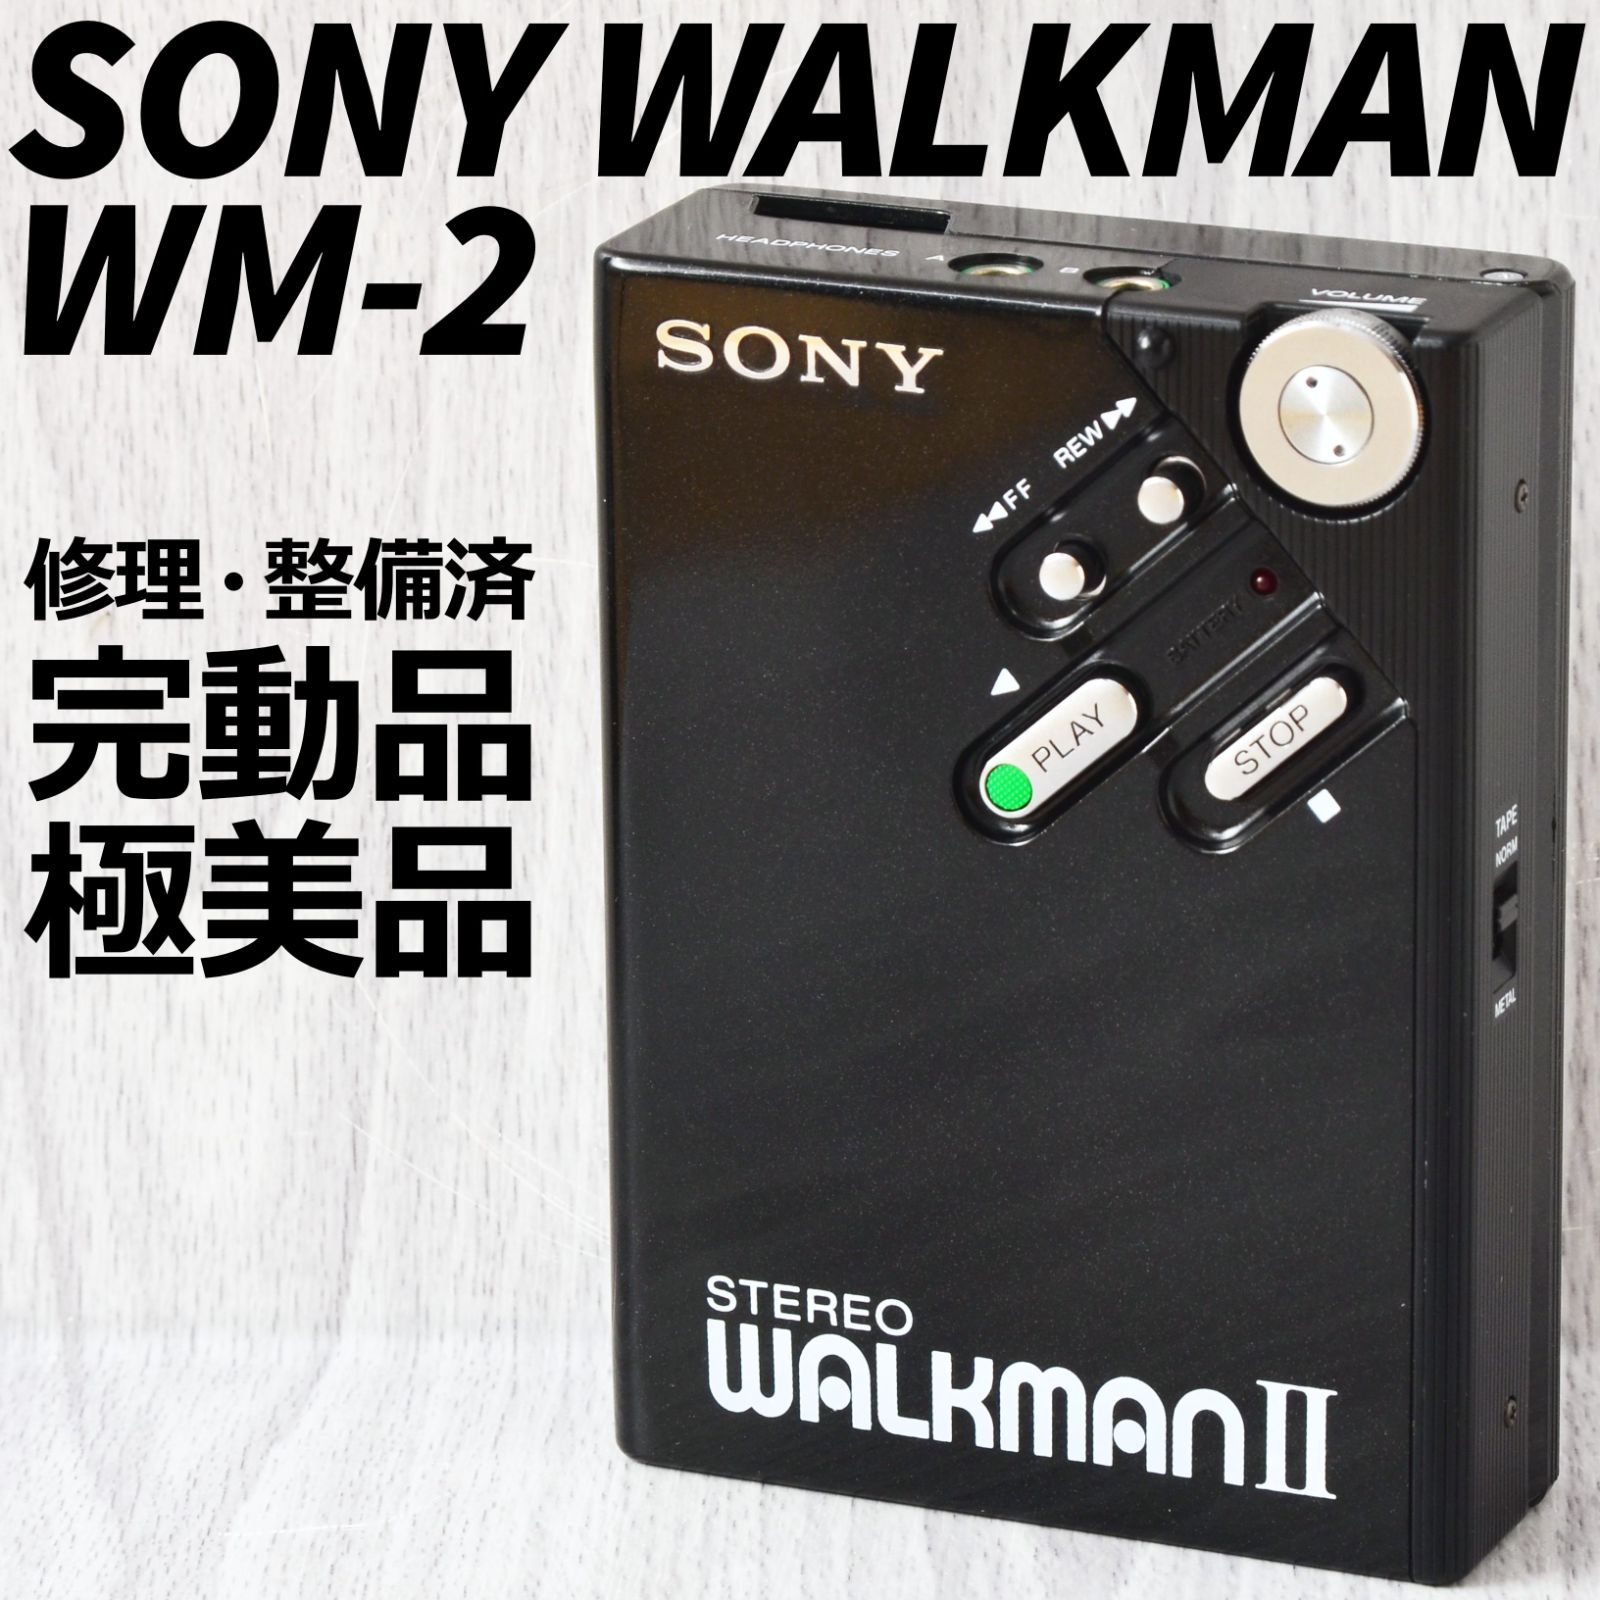 極美品! SONY WALKMAN WM-2 カセットウォークマン 黒 修理・整備済 完